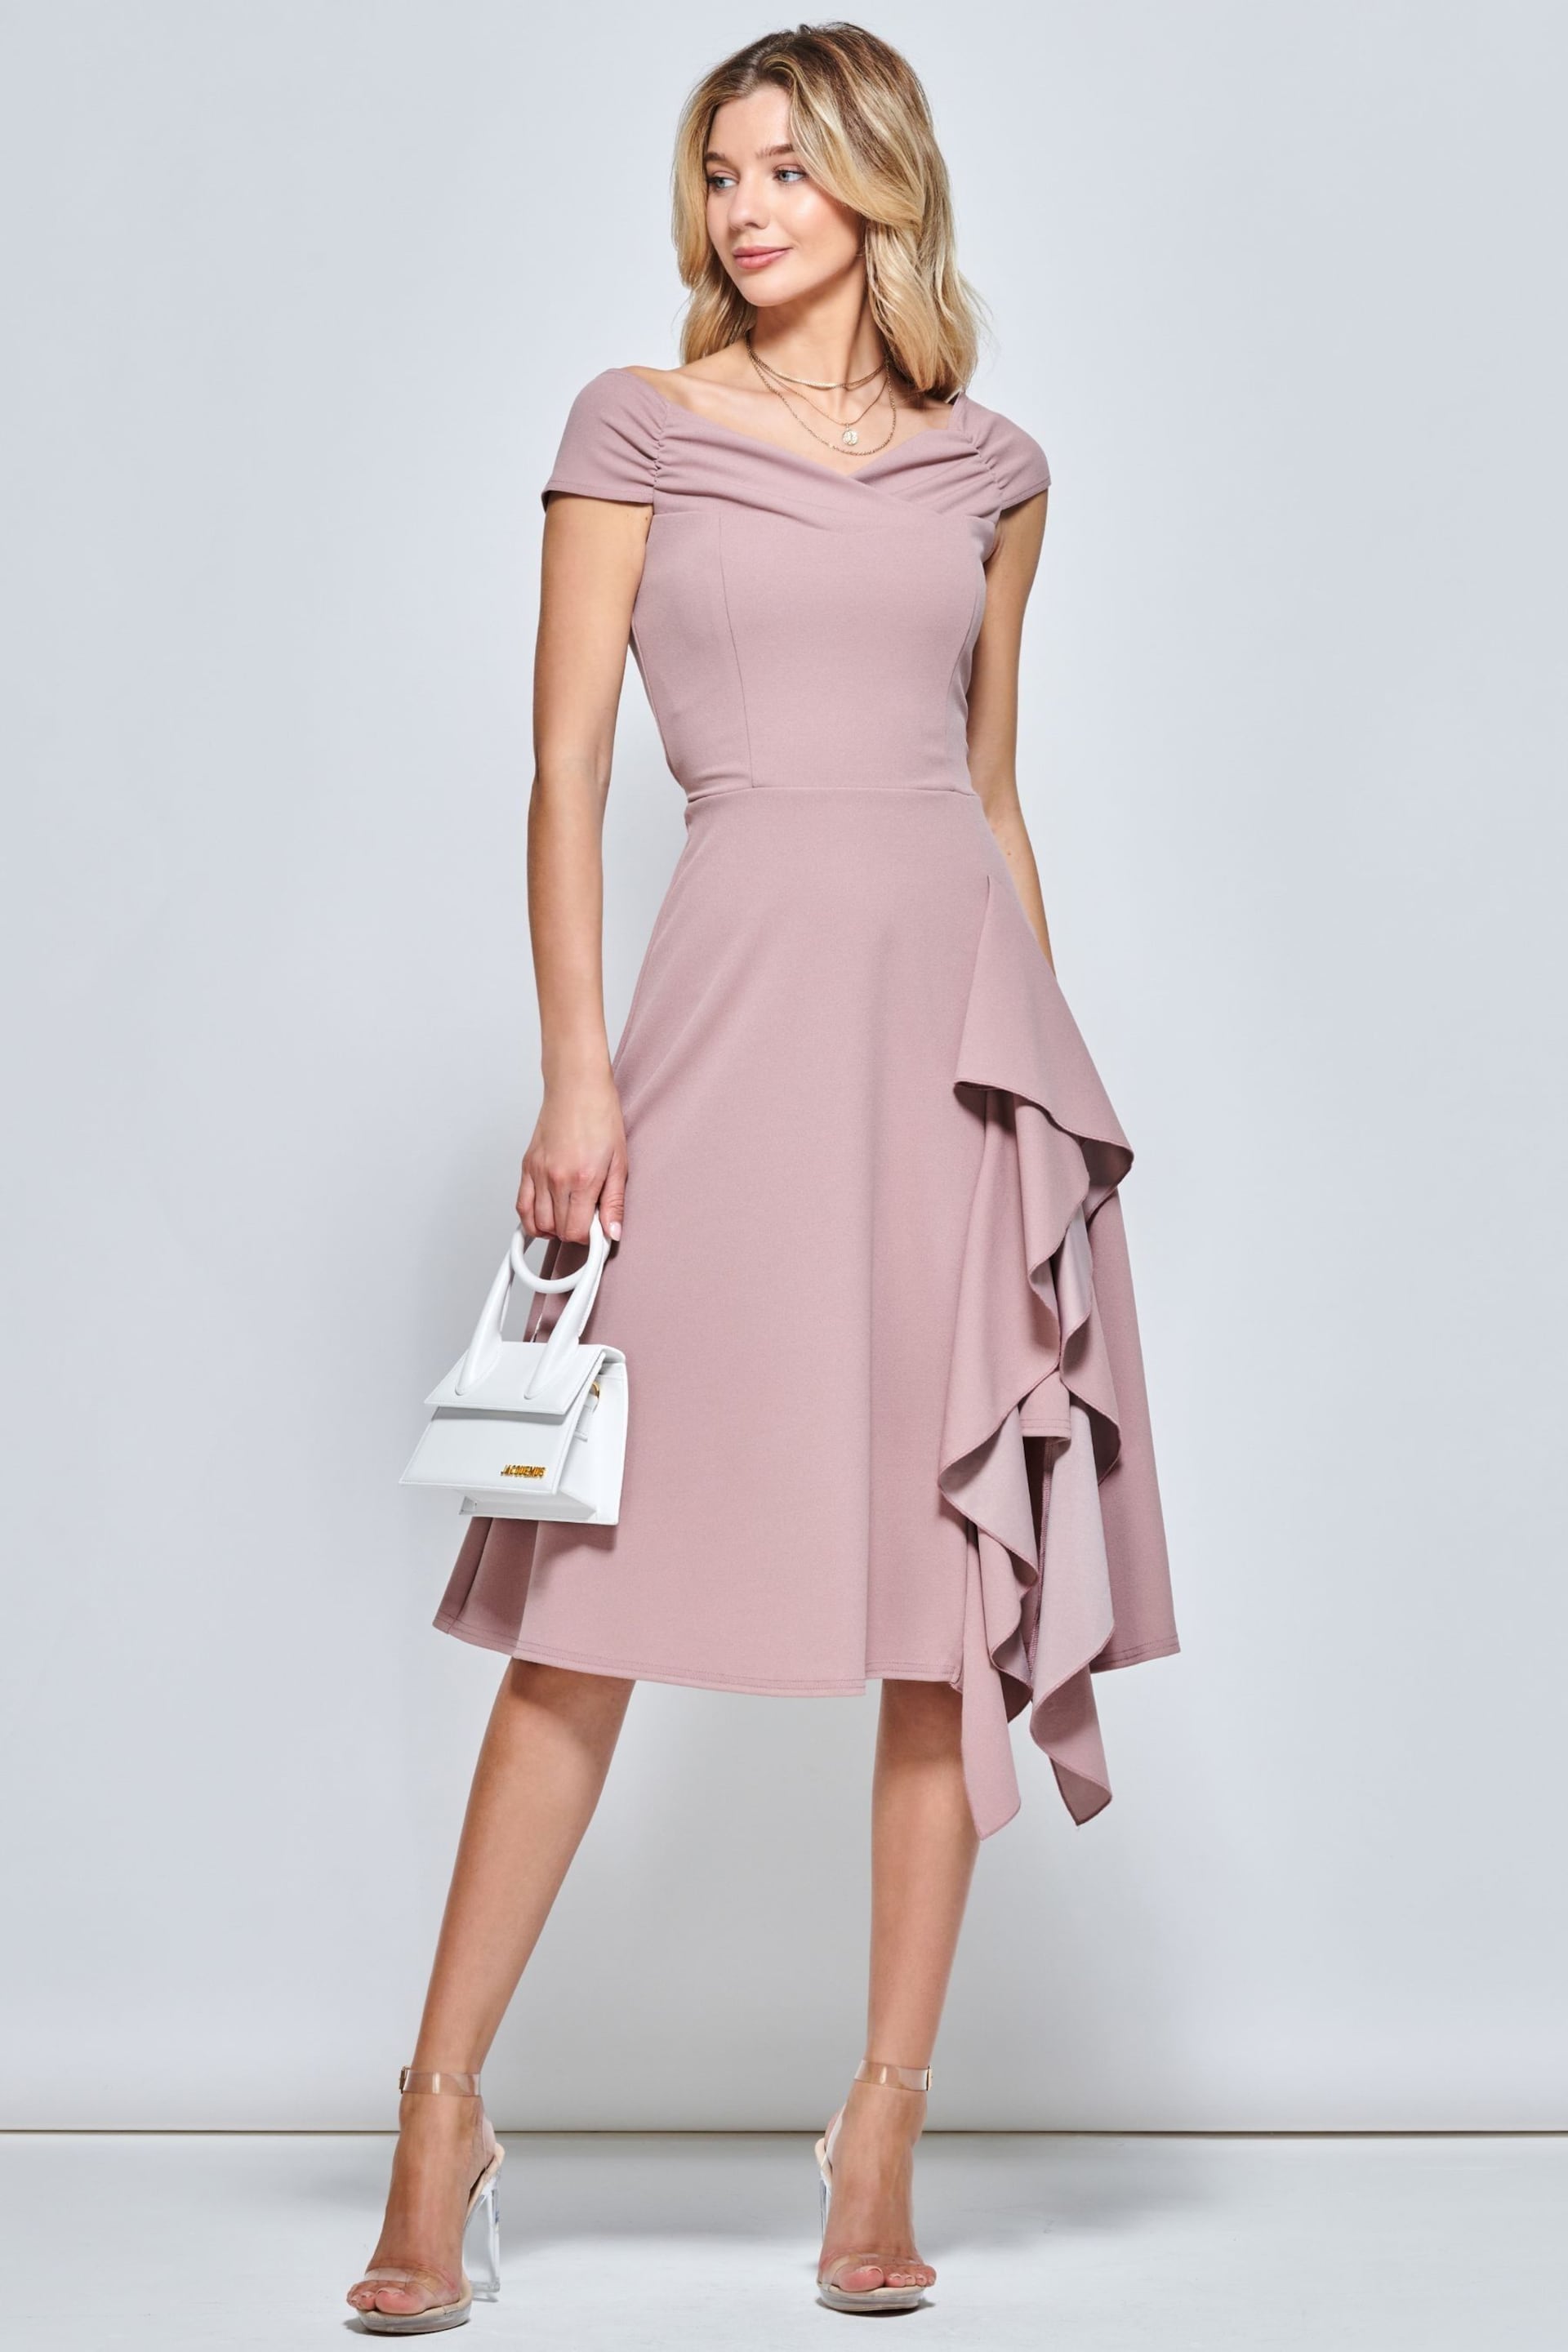 Jolie Moi Pink Skylar Off Shoulder Ruffle Hem Dress - Image 1 of 5